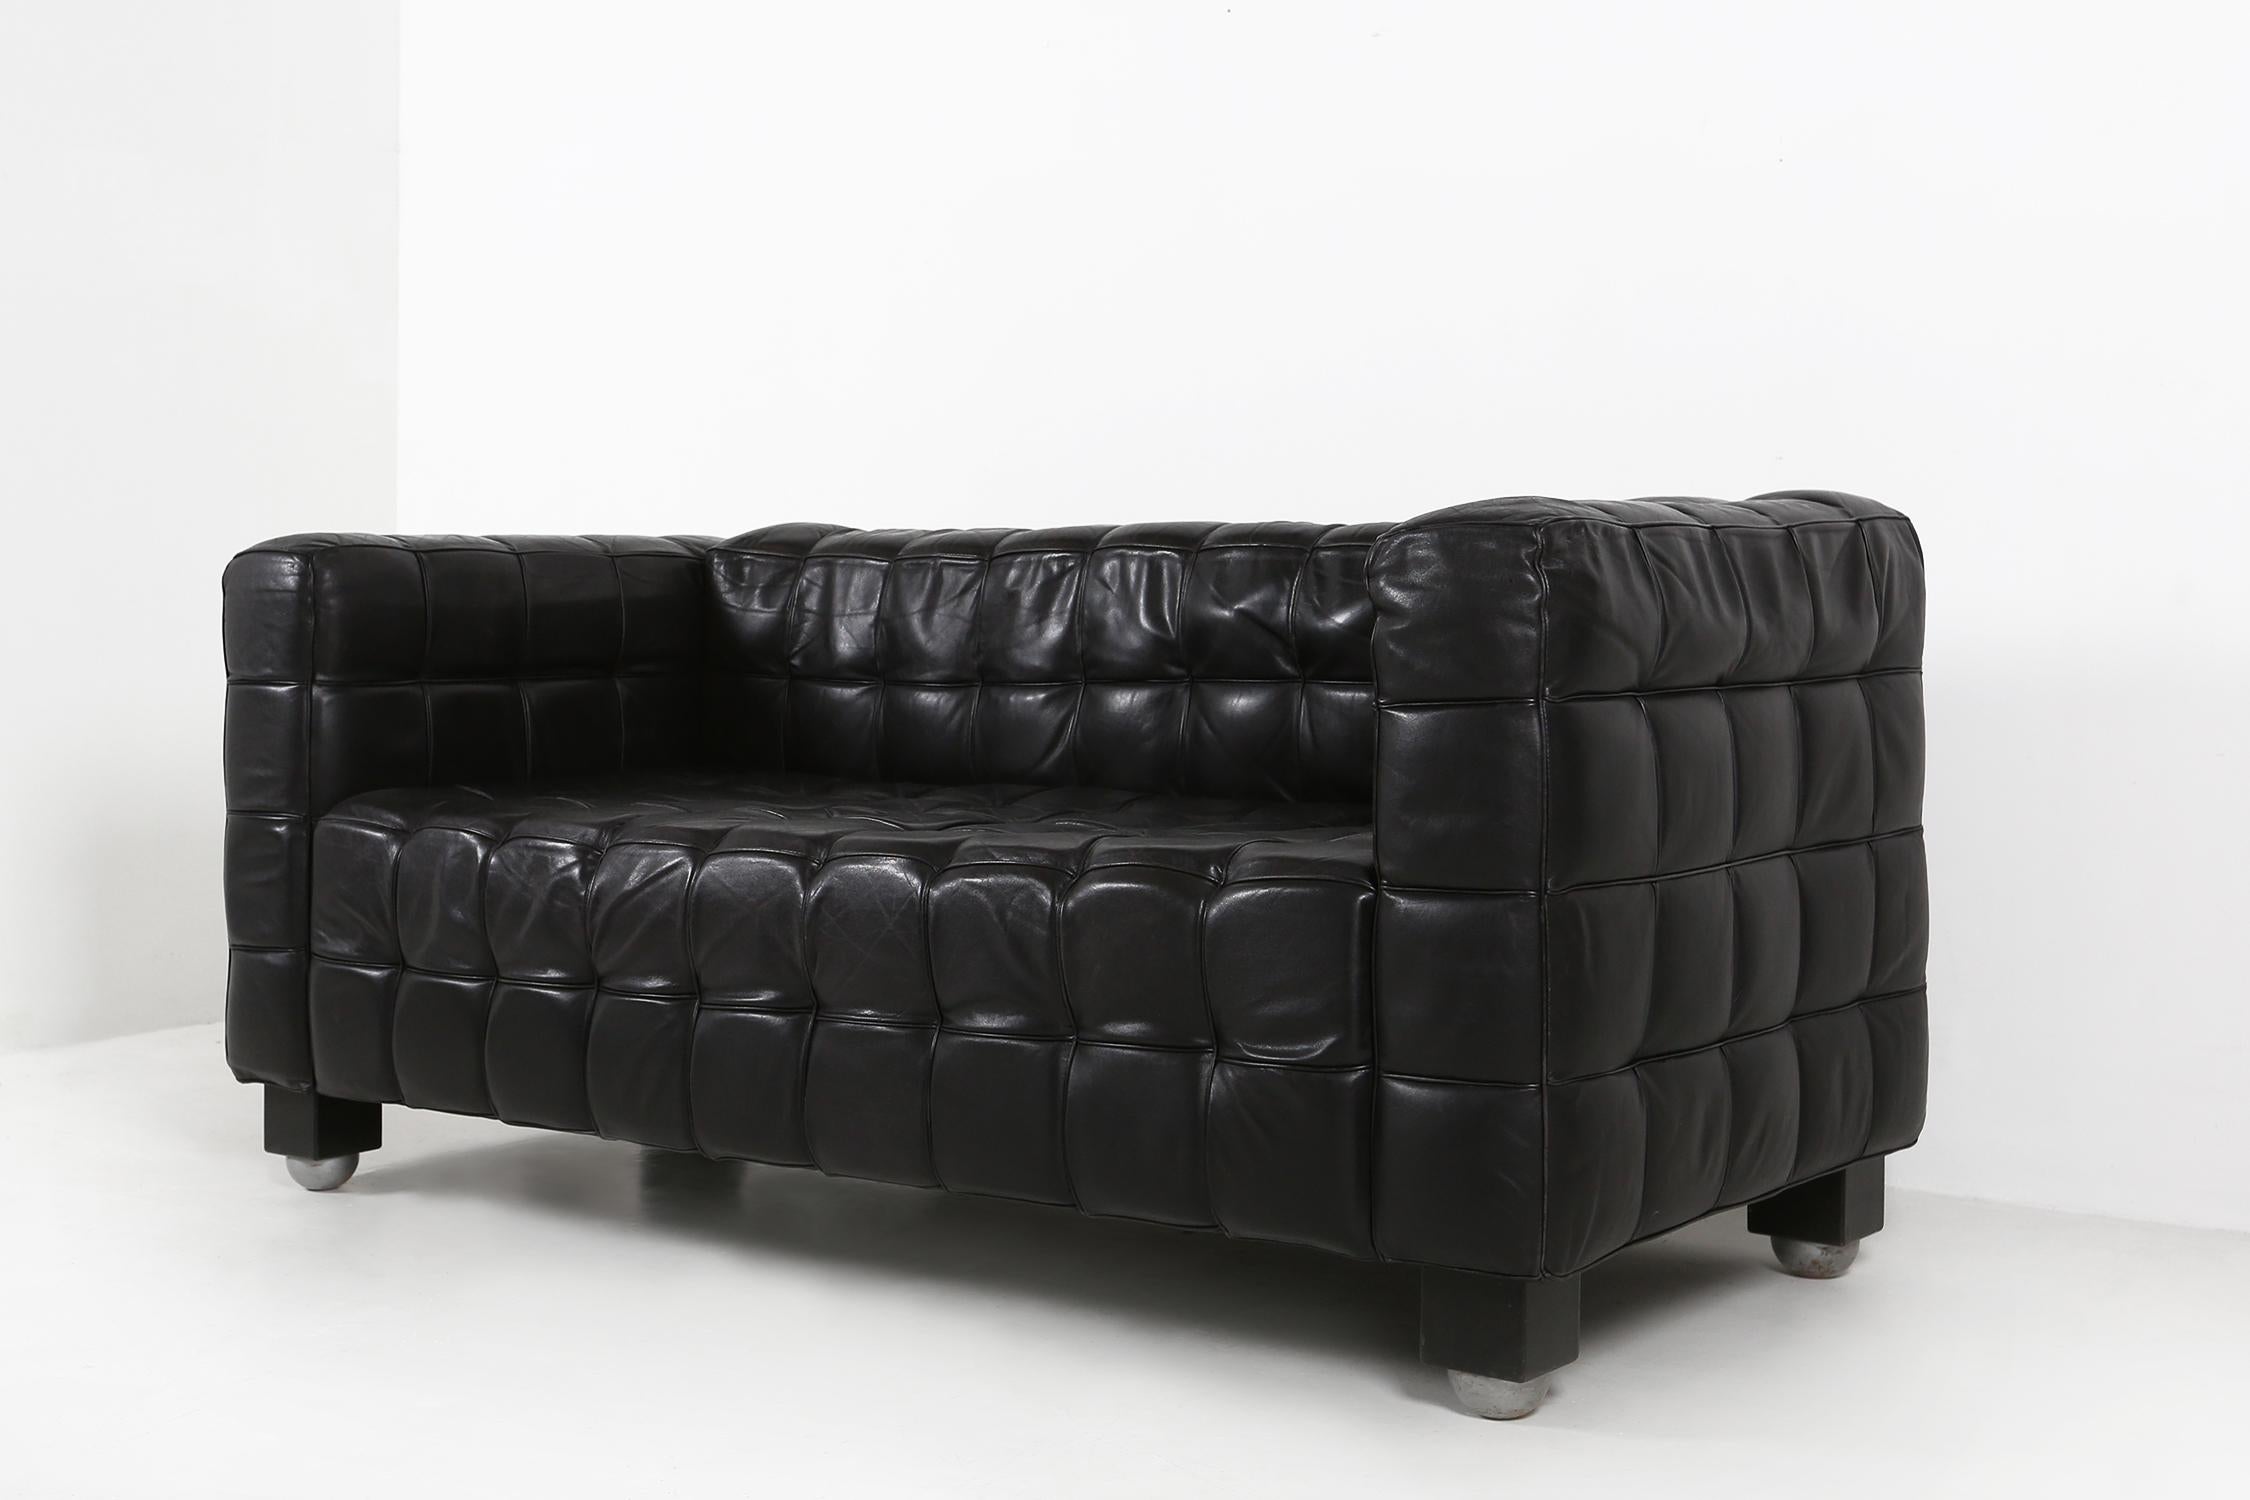 Canapé Kubus en cuir noir modèle ''8020'' conçu par Josef Hoffmann pour Wittmann.
Ce canapé Kubus a été conçu en 1910 pour l'exposition de Buenos Aires, afin de célébrer l'indépendance de l'Argentine.
Depuis 1960, le canapé est produit par le